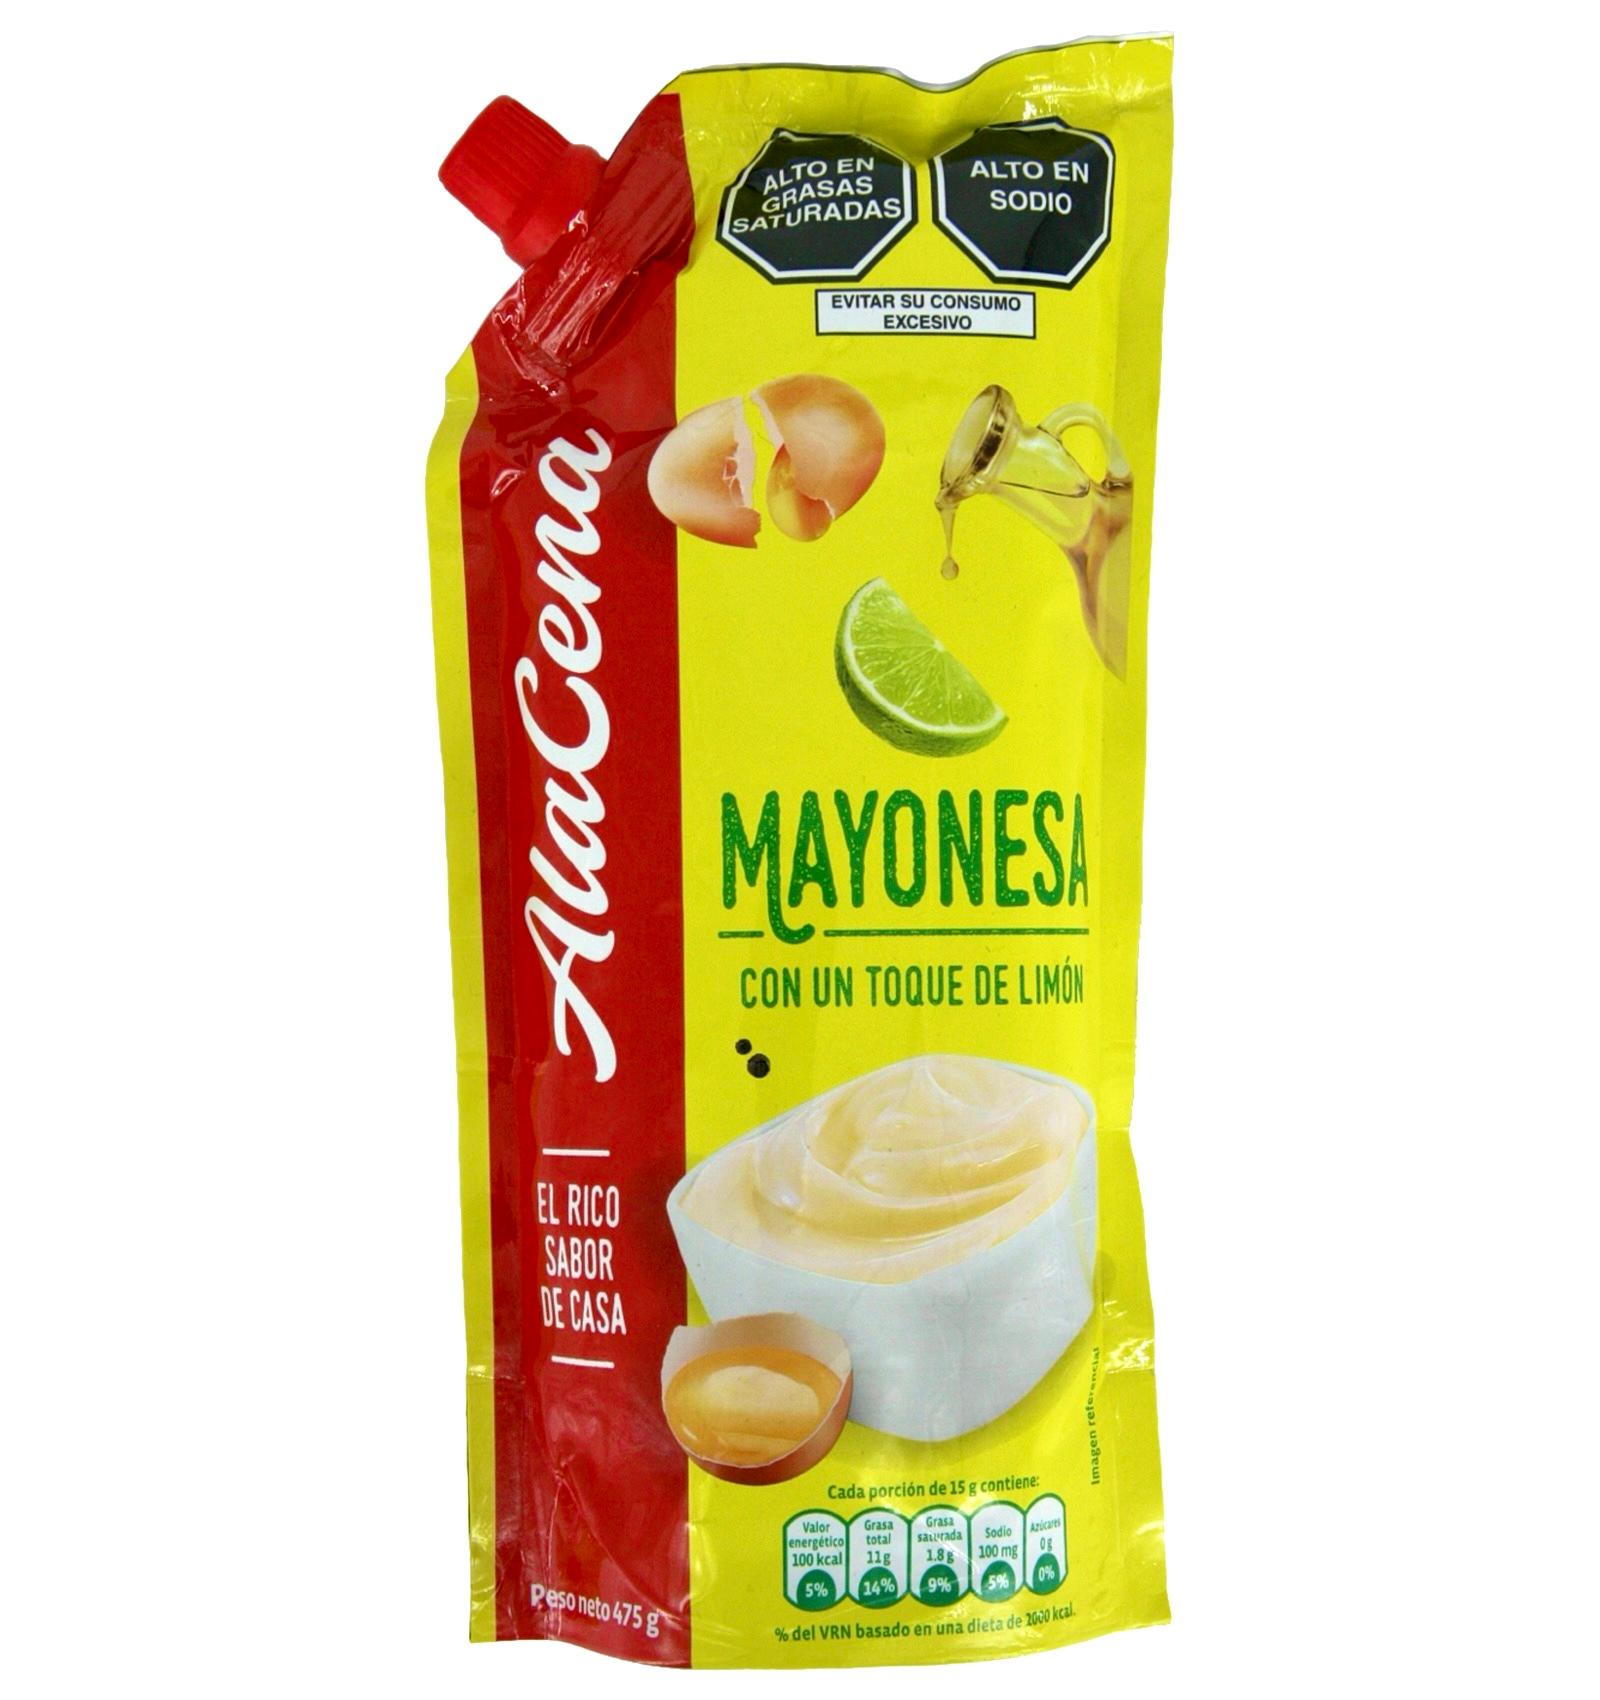 Mayonesa con un toque de limón